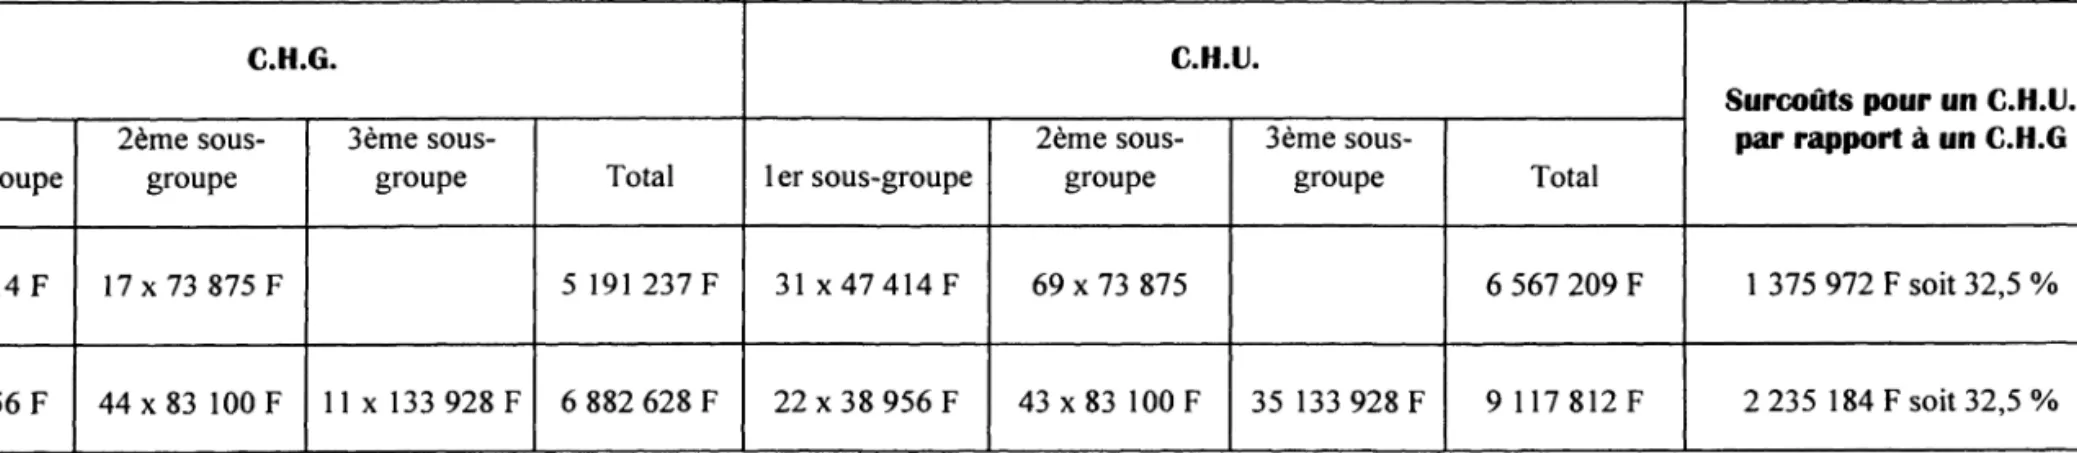 TABLEAU 2 : Surcoûts estimés pour un C.H.U. par rapport à un C.H.G. 